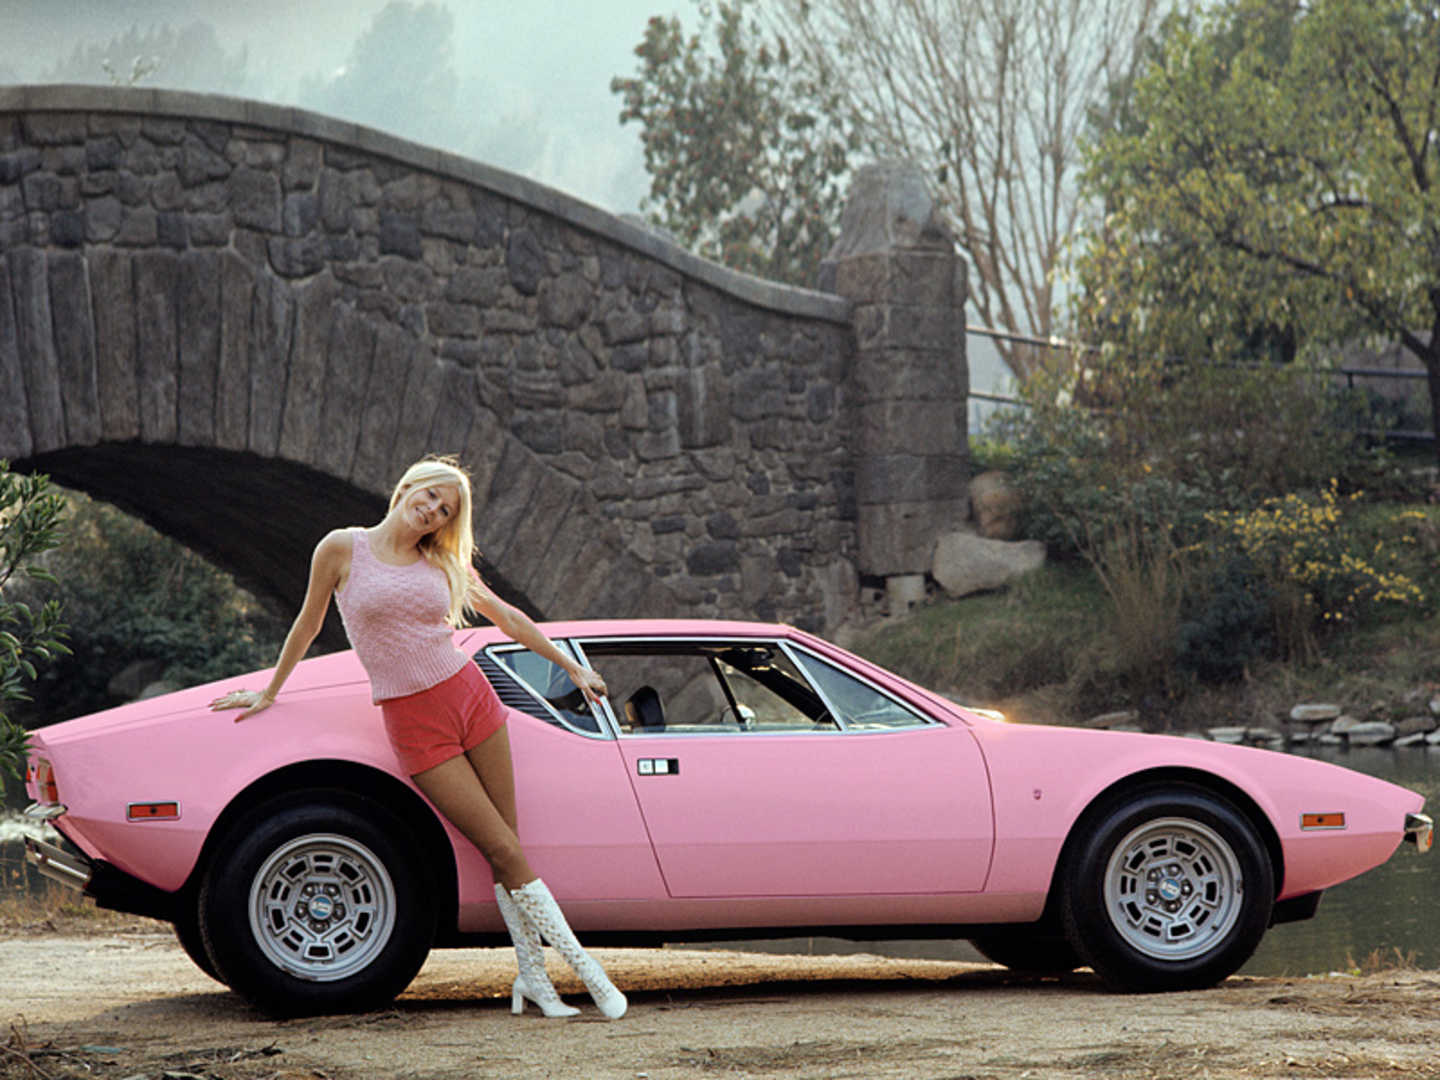 En 1972, retour à la voiture avec une De Tomaso Pantera étonnante en rose !